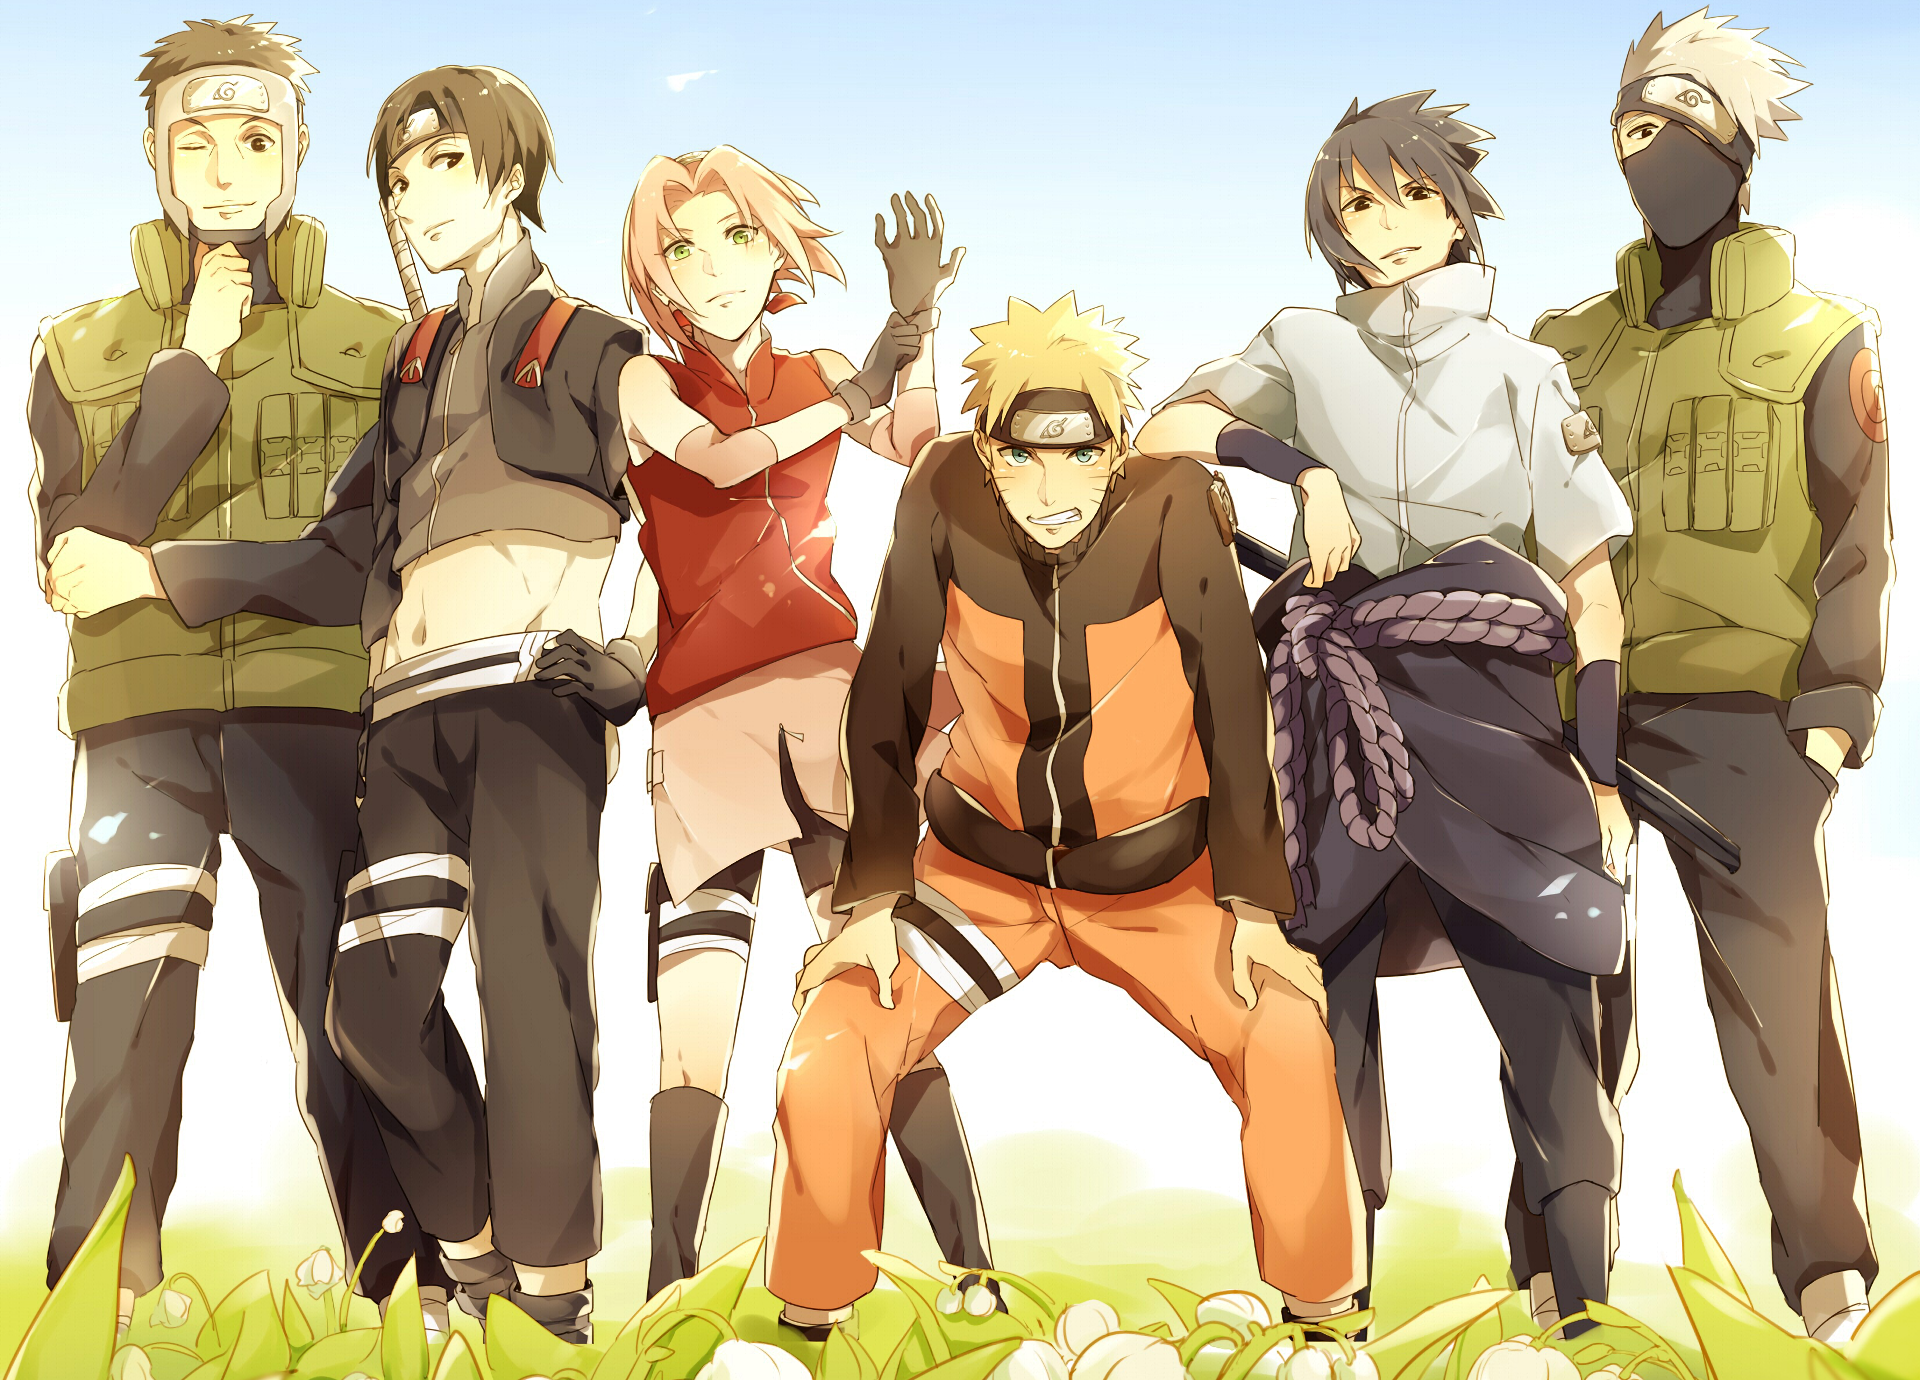 HD desktop wallpaper featuring Yamato, Sai, Kakashi Hatake, Sasuke Uchiha, Sakura Haruno, and Naruto Uzumaki from the anime Naruto, standing together in a sunny field.